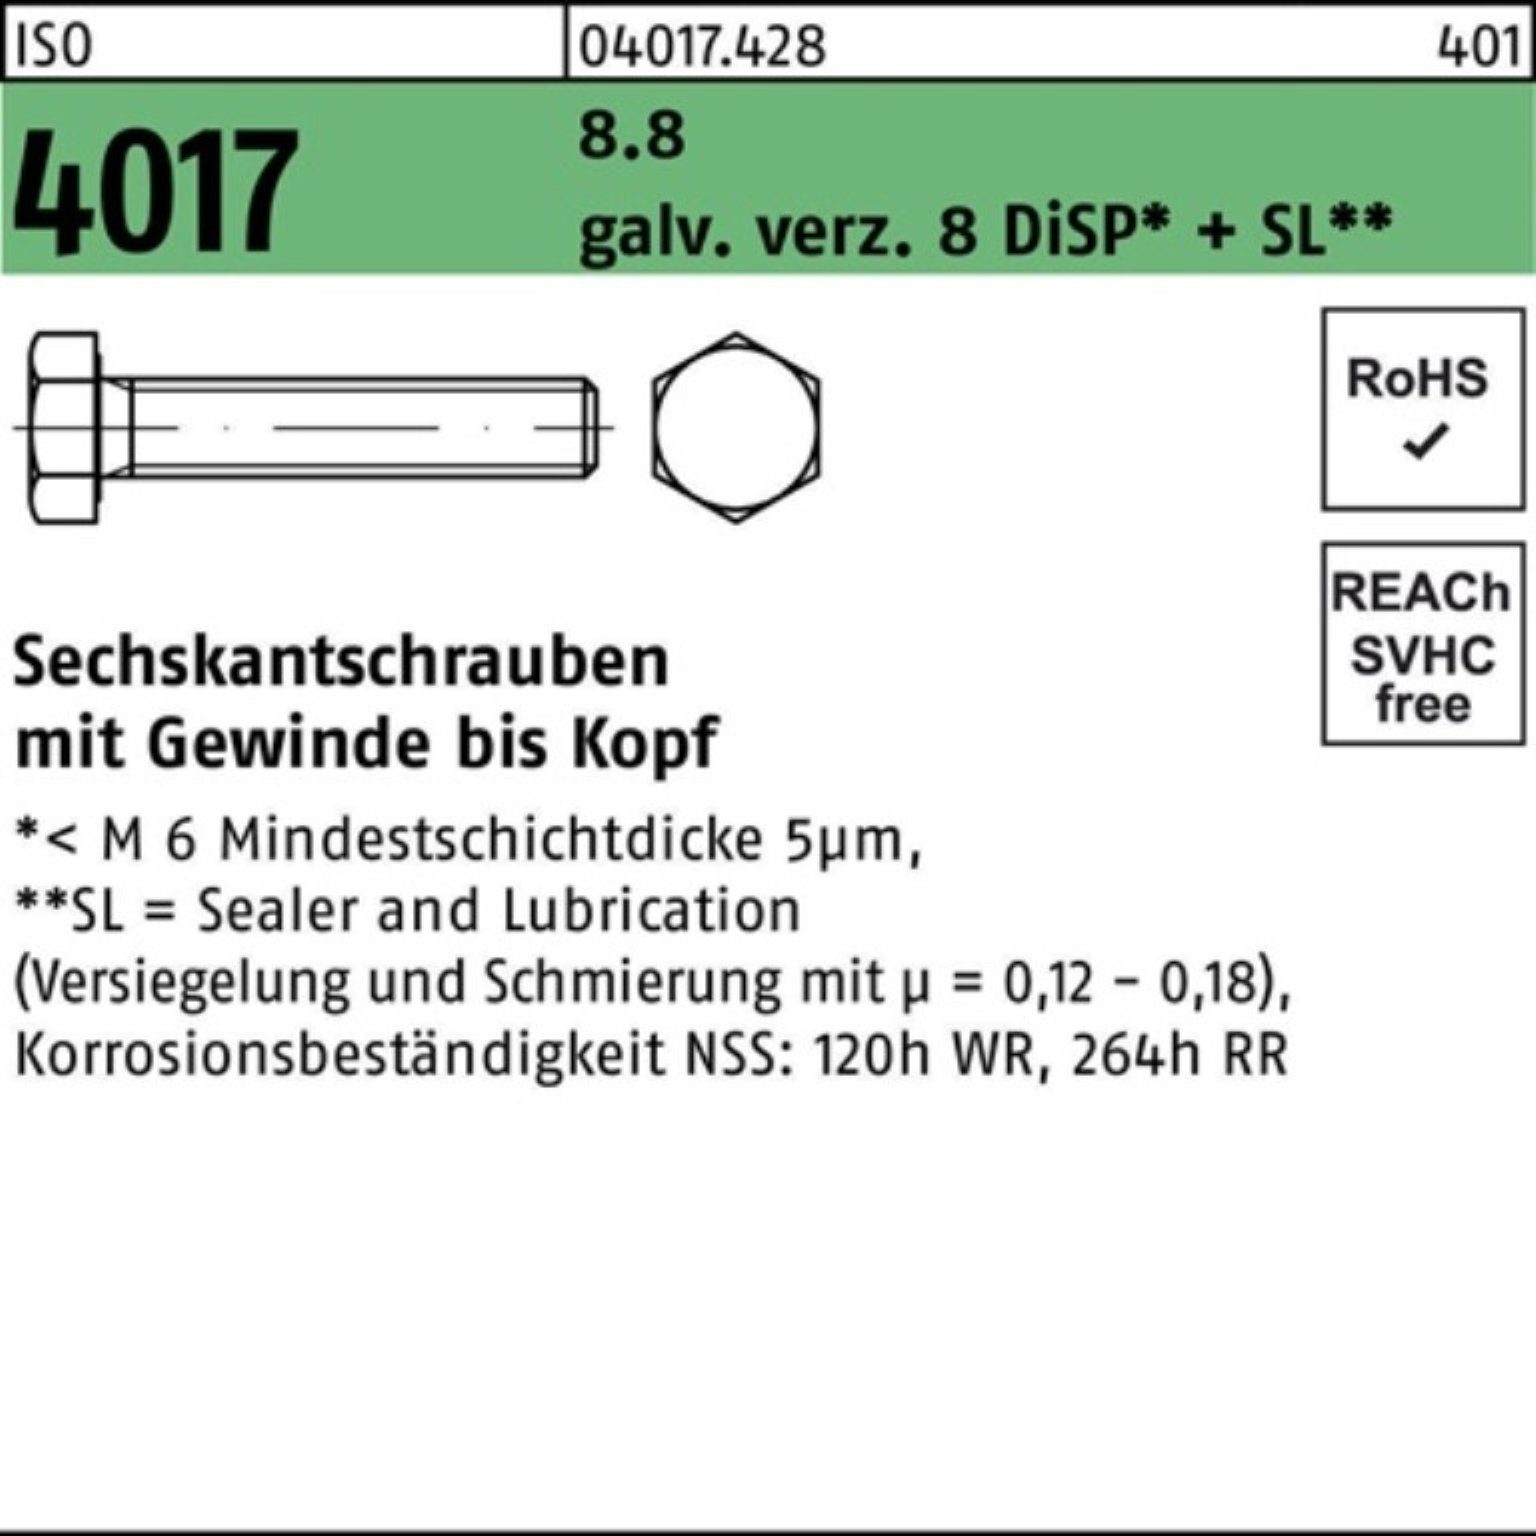 VG DiSP+ Pack Sechskantschraube 4017 500er Sechskantschraube galv.verz. 35 M4x Bufab ISO 8.8 8